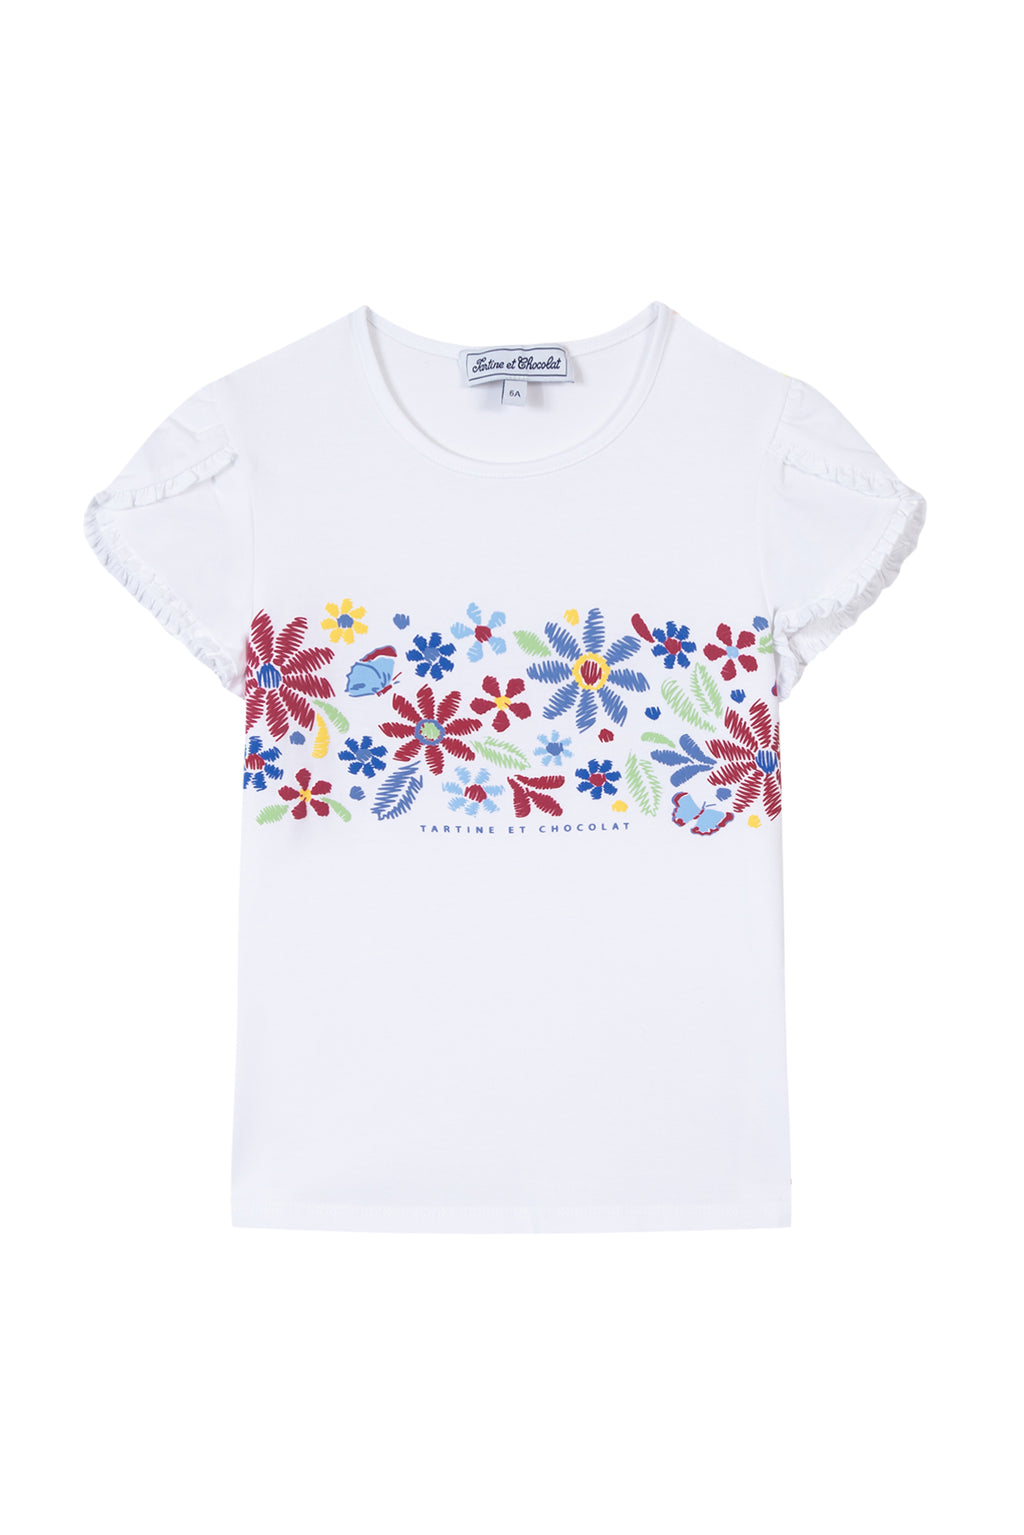 T -shirt - bougainvillier Tekening bloem